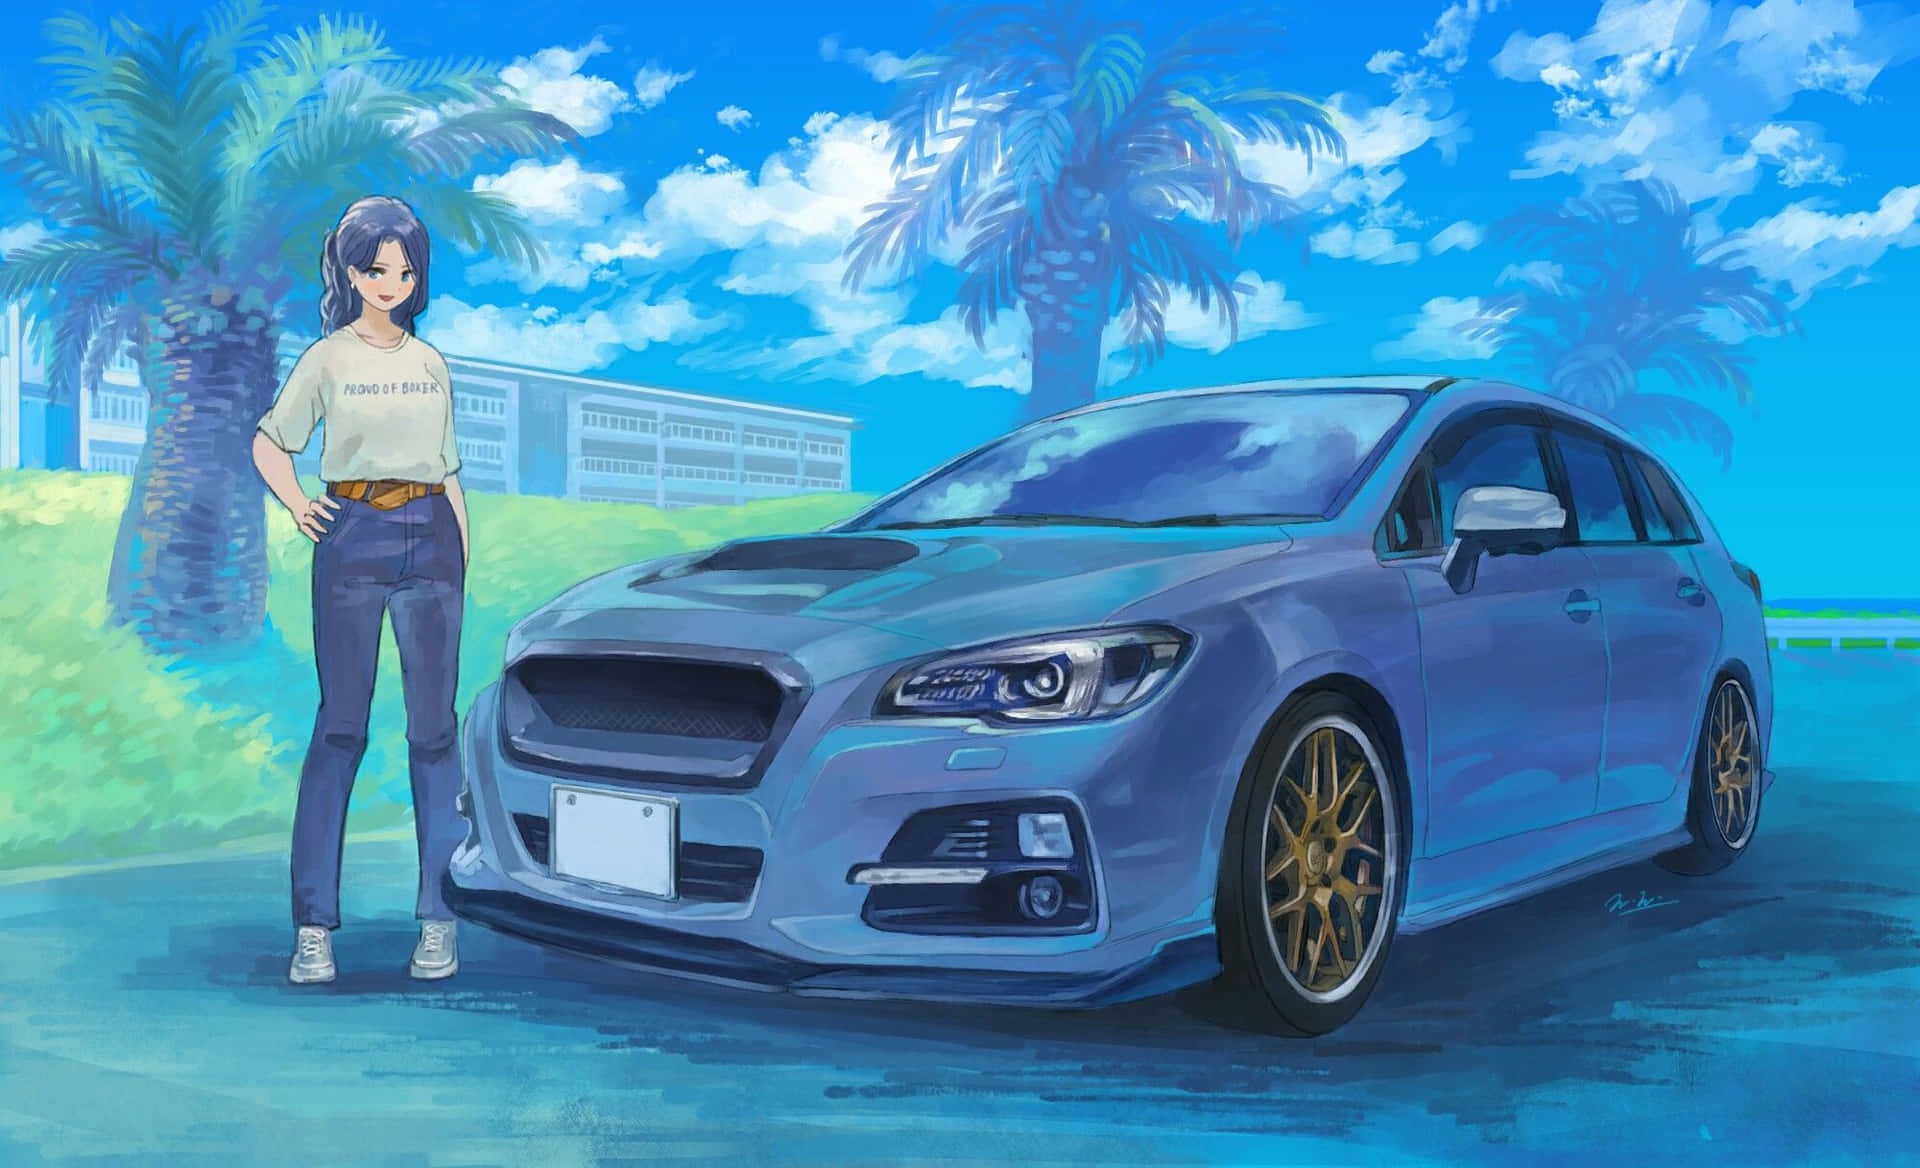 Erlebensie Den Nervenkitzel Des Anime-stils In Dieser Nahaufnahme Eines Anime-autos.